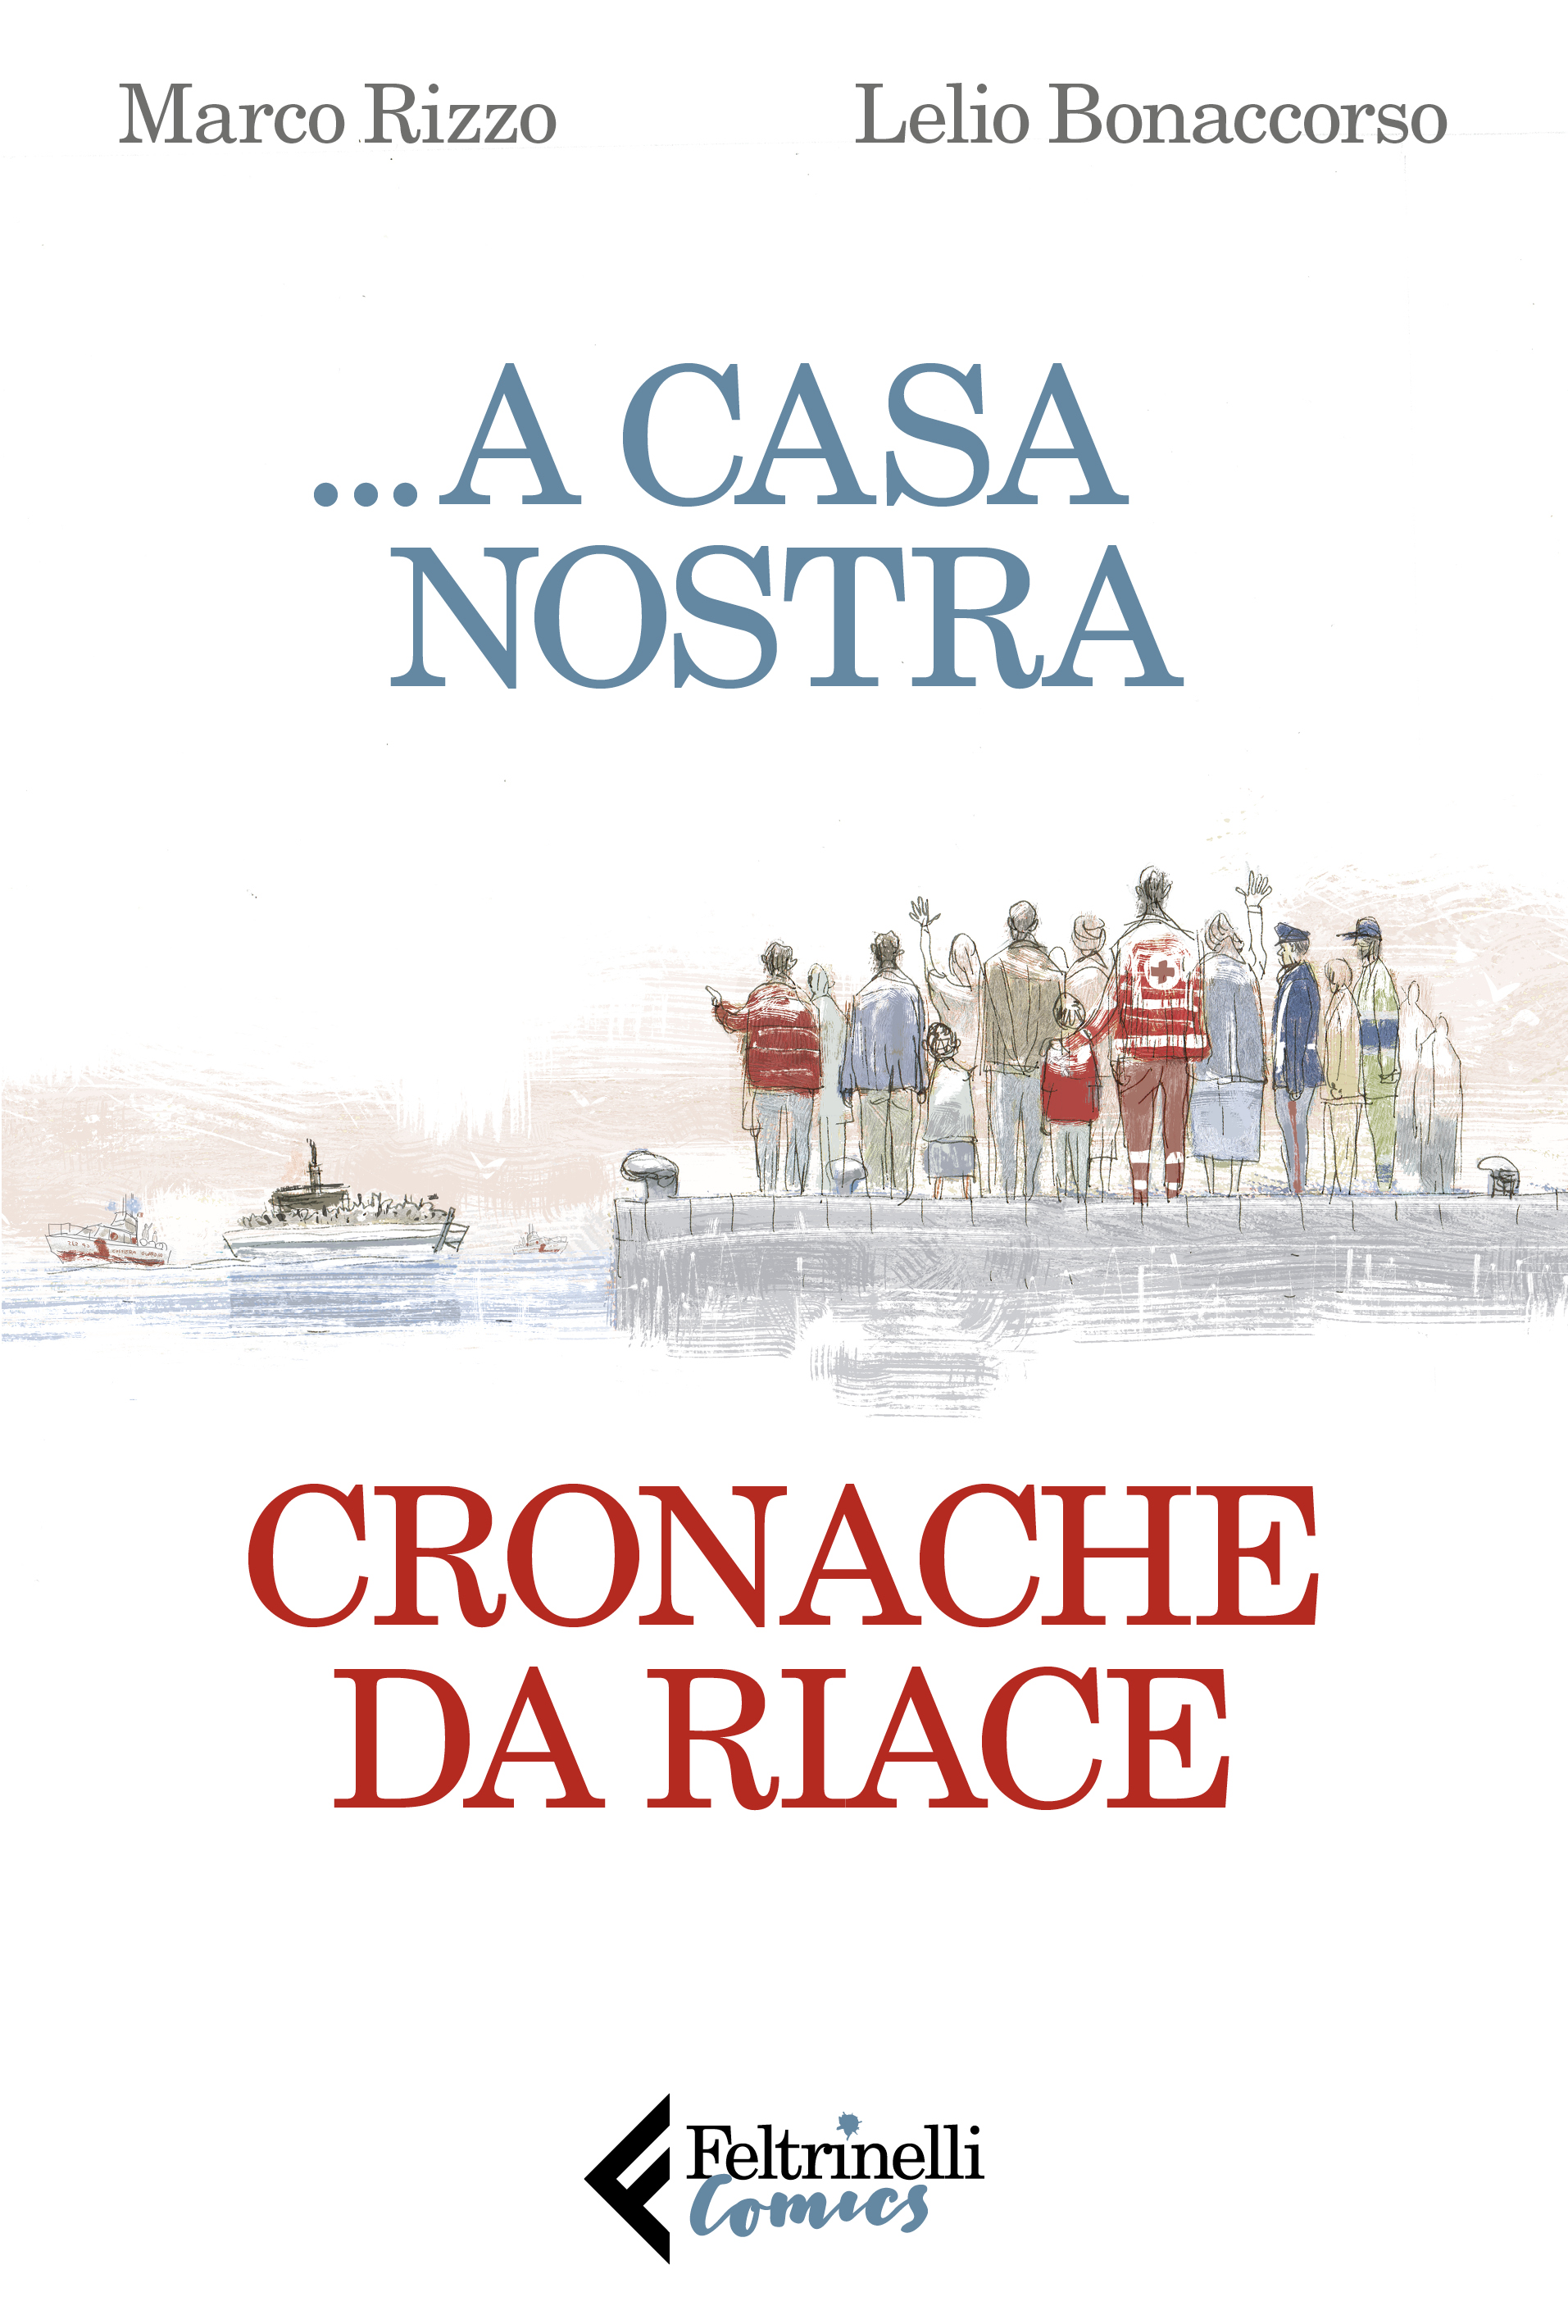 Cover Bonaccorso, Rizzo Riace1